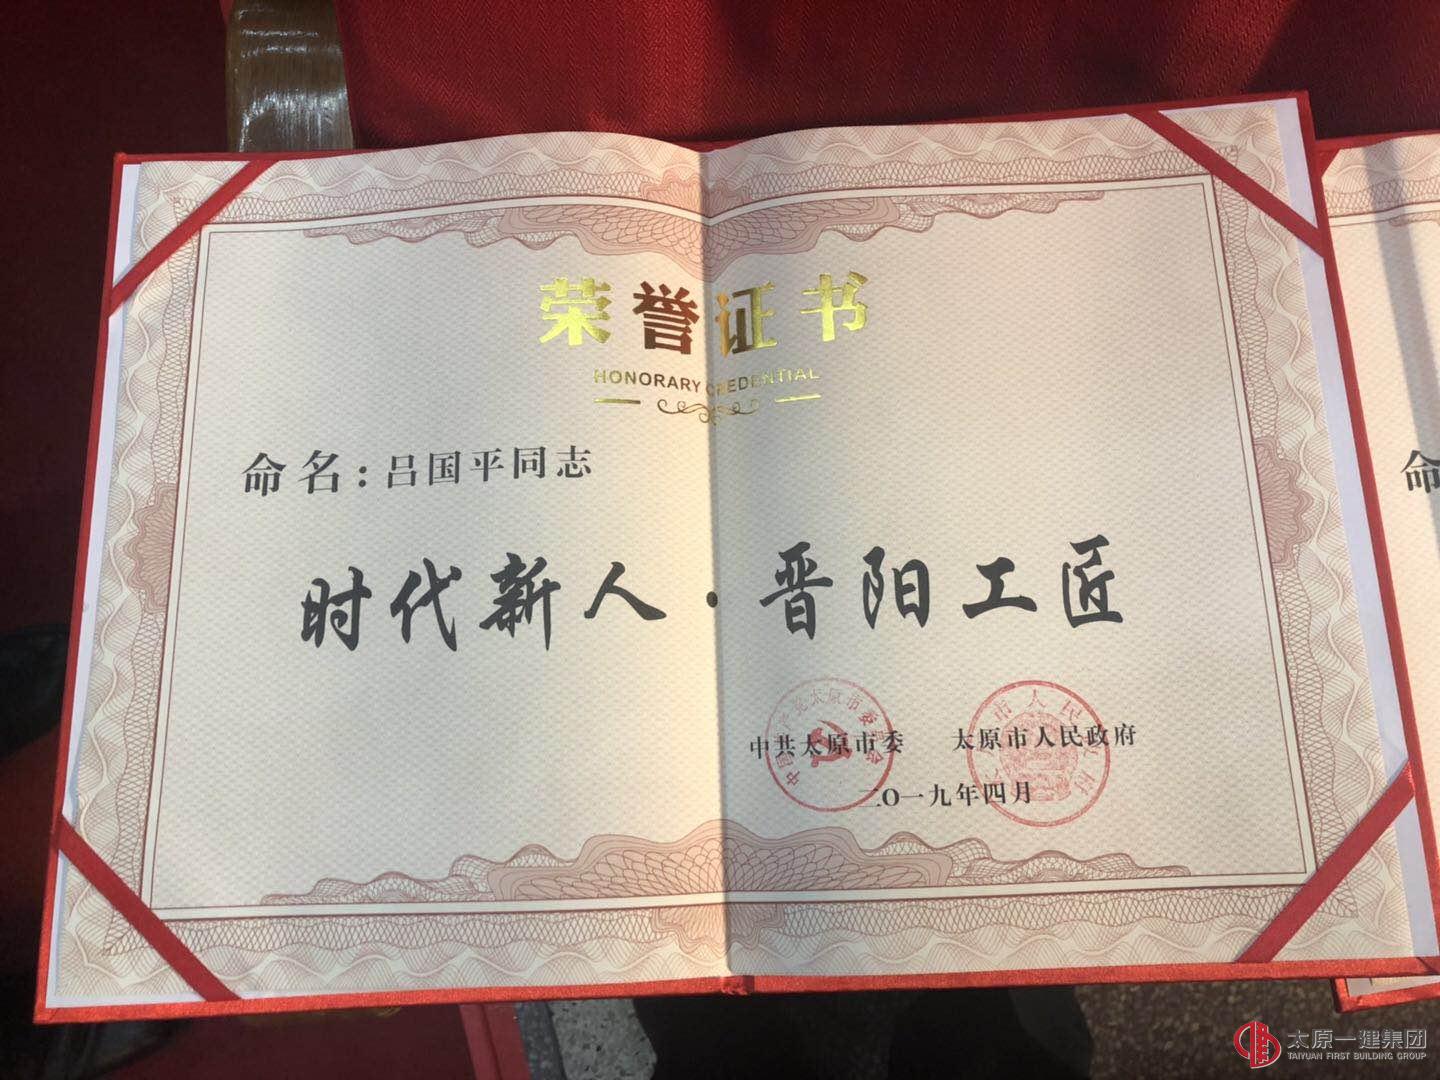 快讯:集团公司李强、吕国平获得太原市第二届“时代新人.晋阳工匠”称号